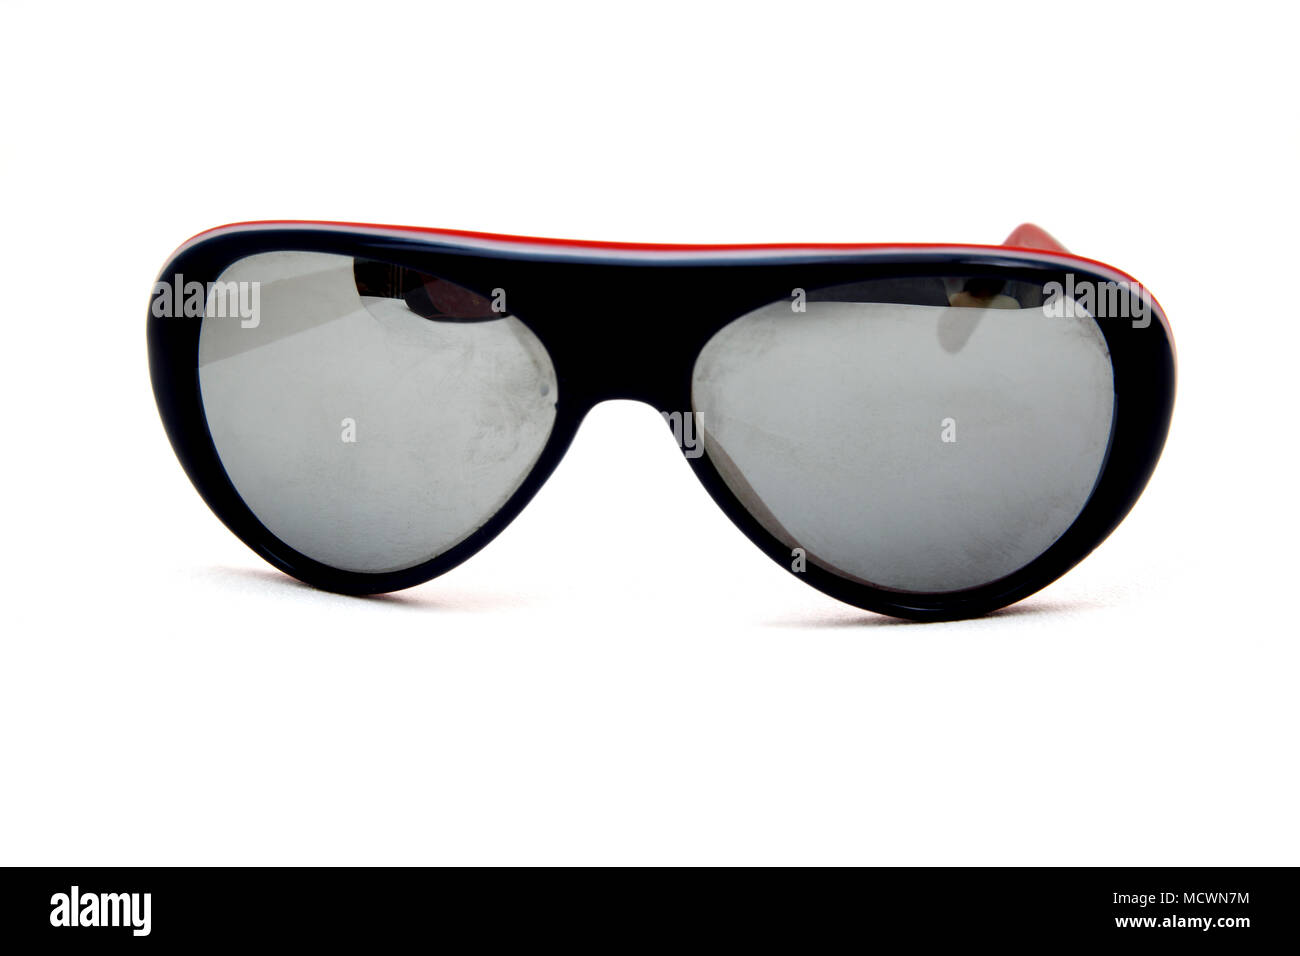 Vintage gafas de sol reflejados con marcos de plástico rojo y negro Foto de stock